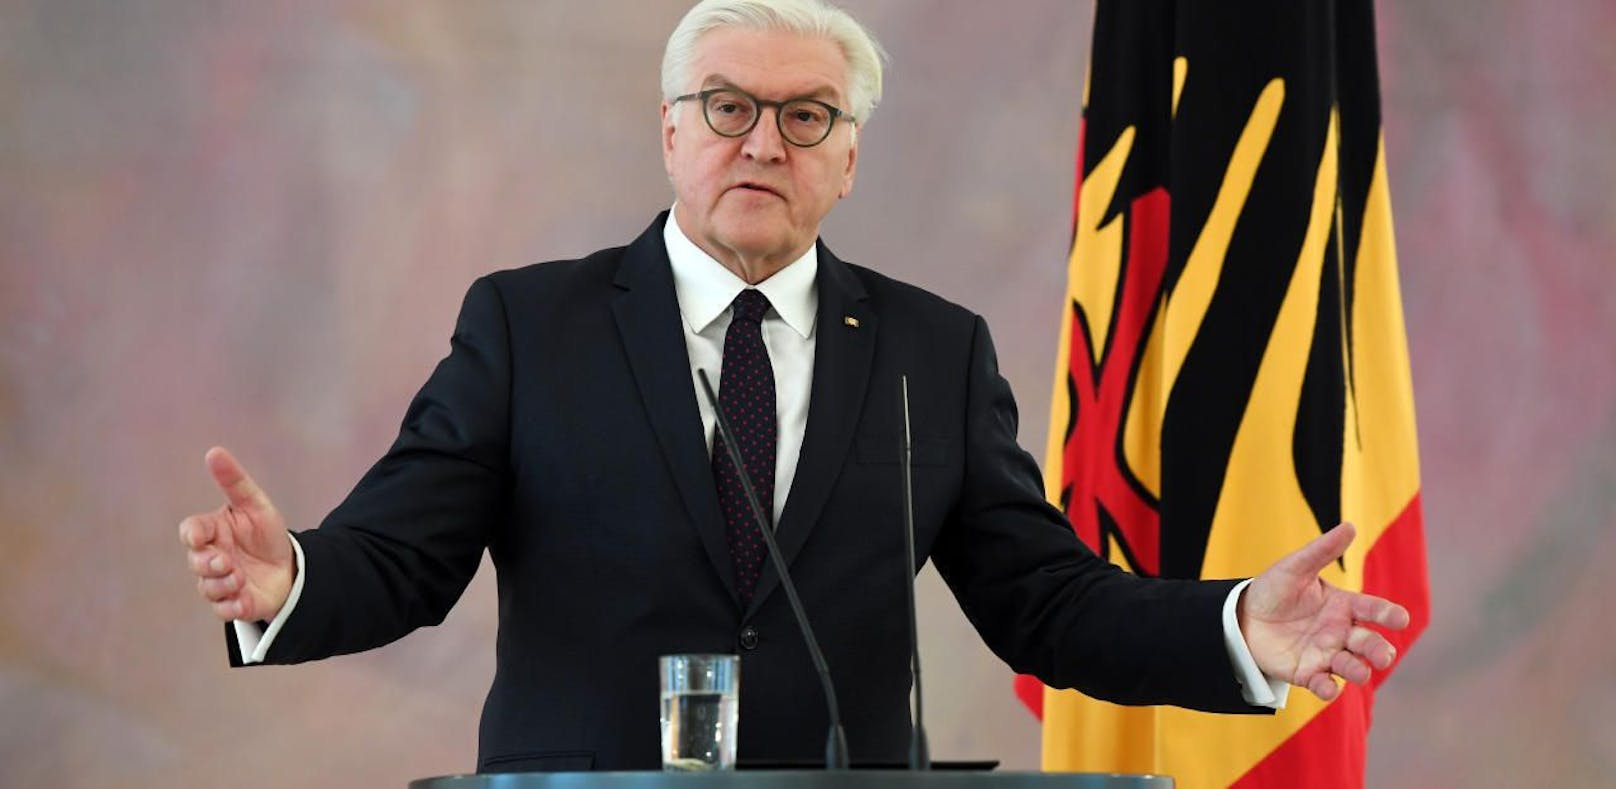 Der deutsche Bundespräsident Frank-Walter Steinmeier